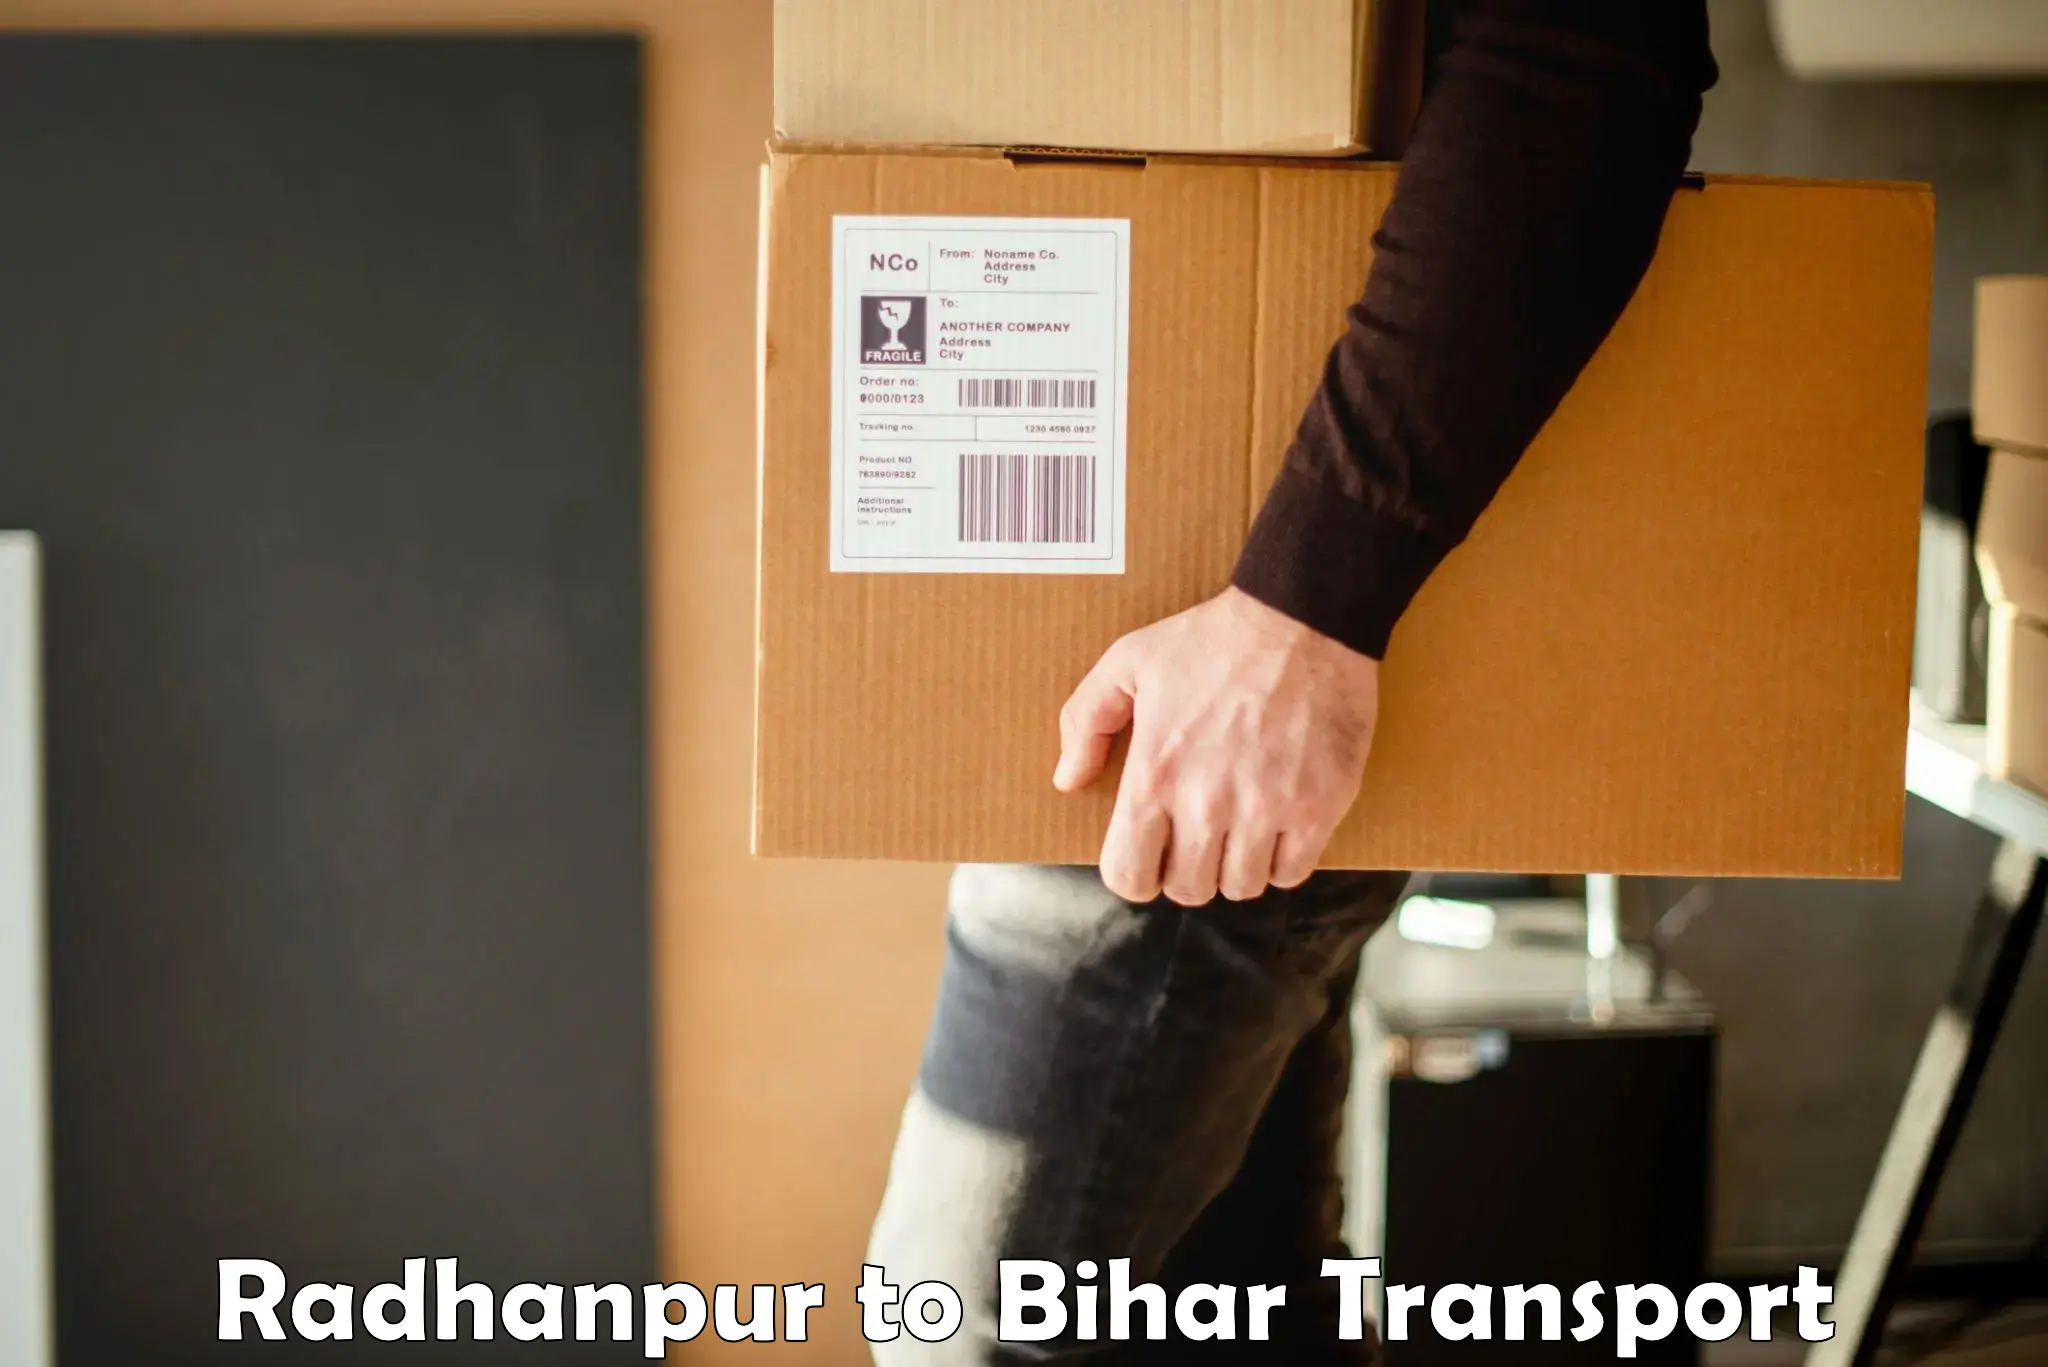 Furniture transport service Radhanpur to Munger